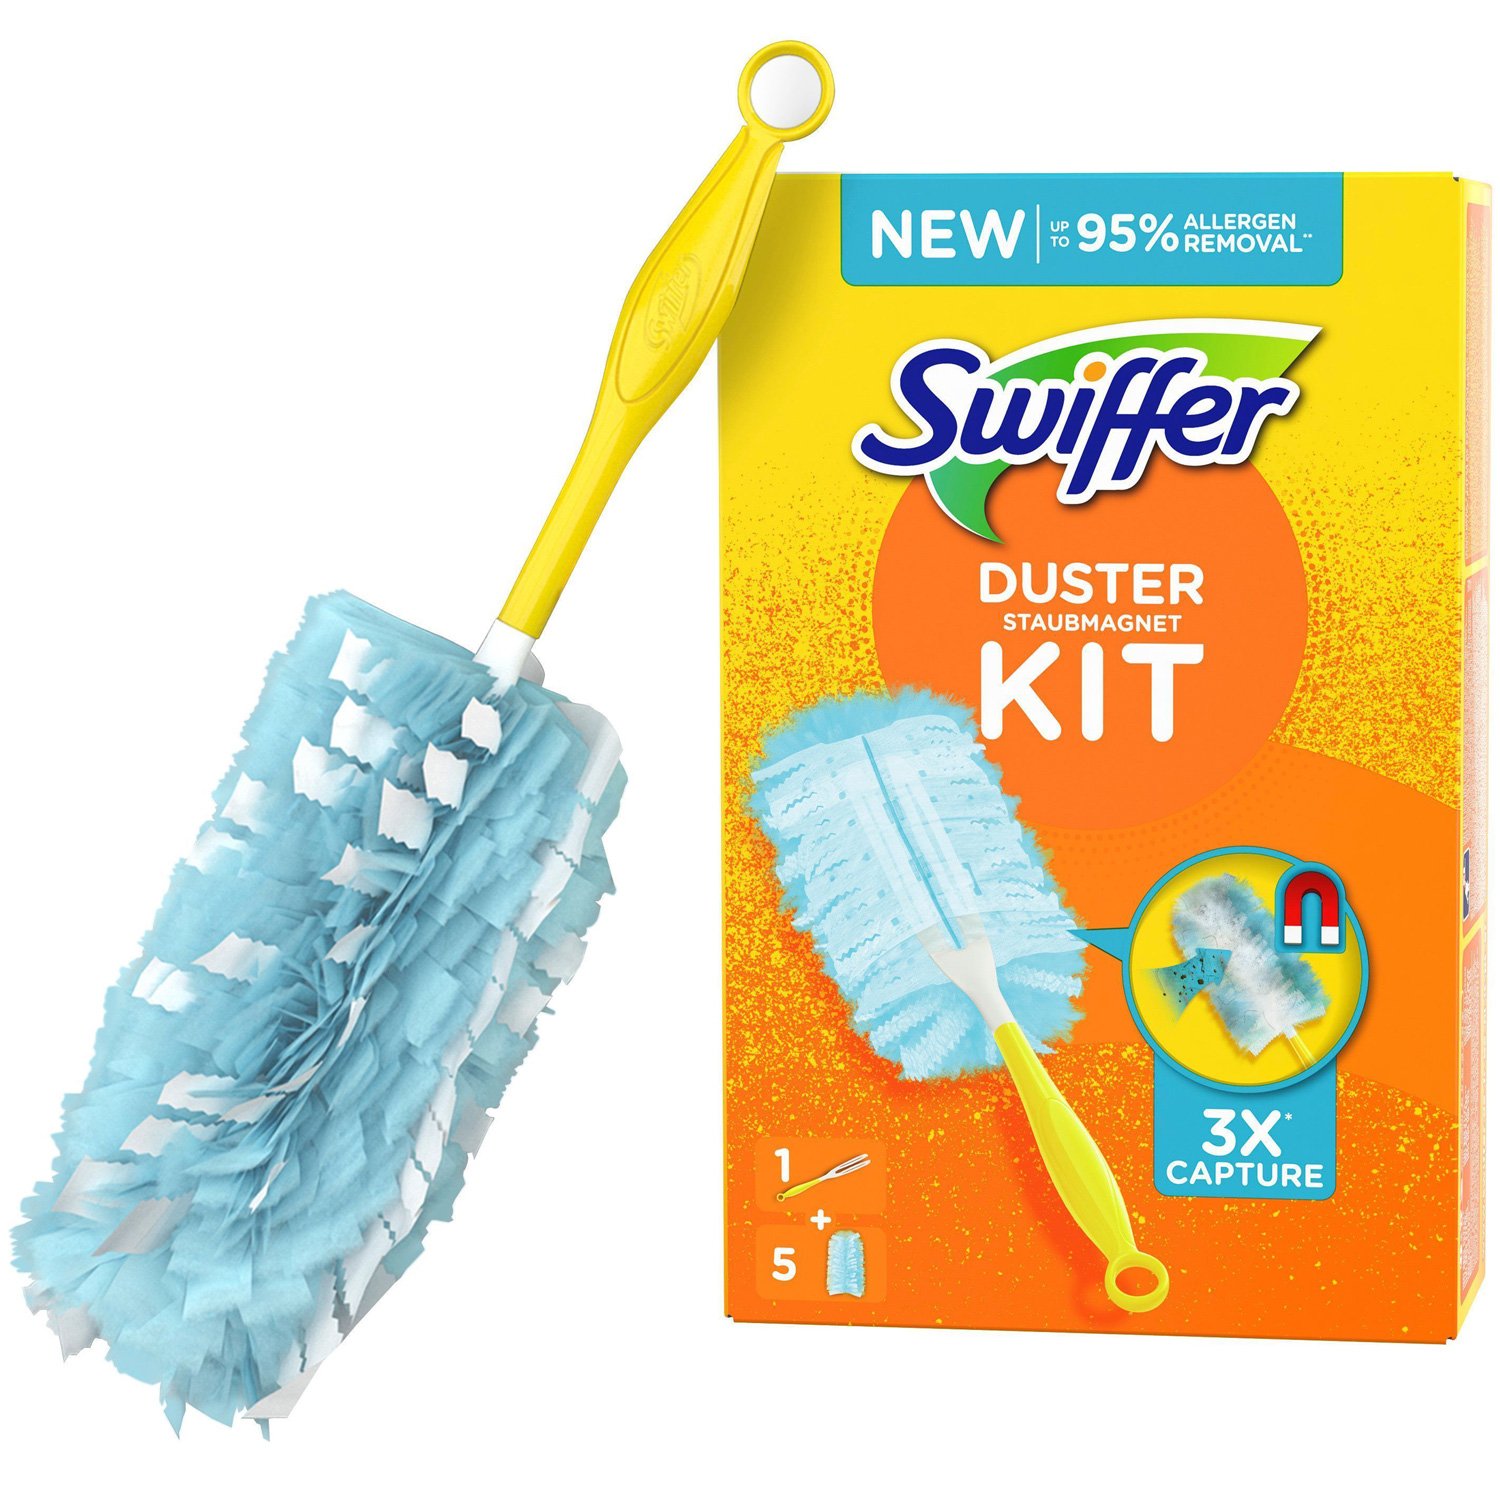 Swiffer Duster Kit 1 Handtag + 5 Refiller